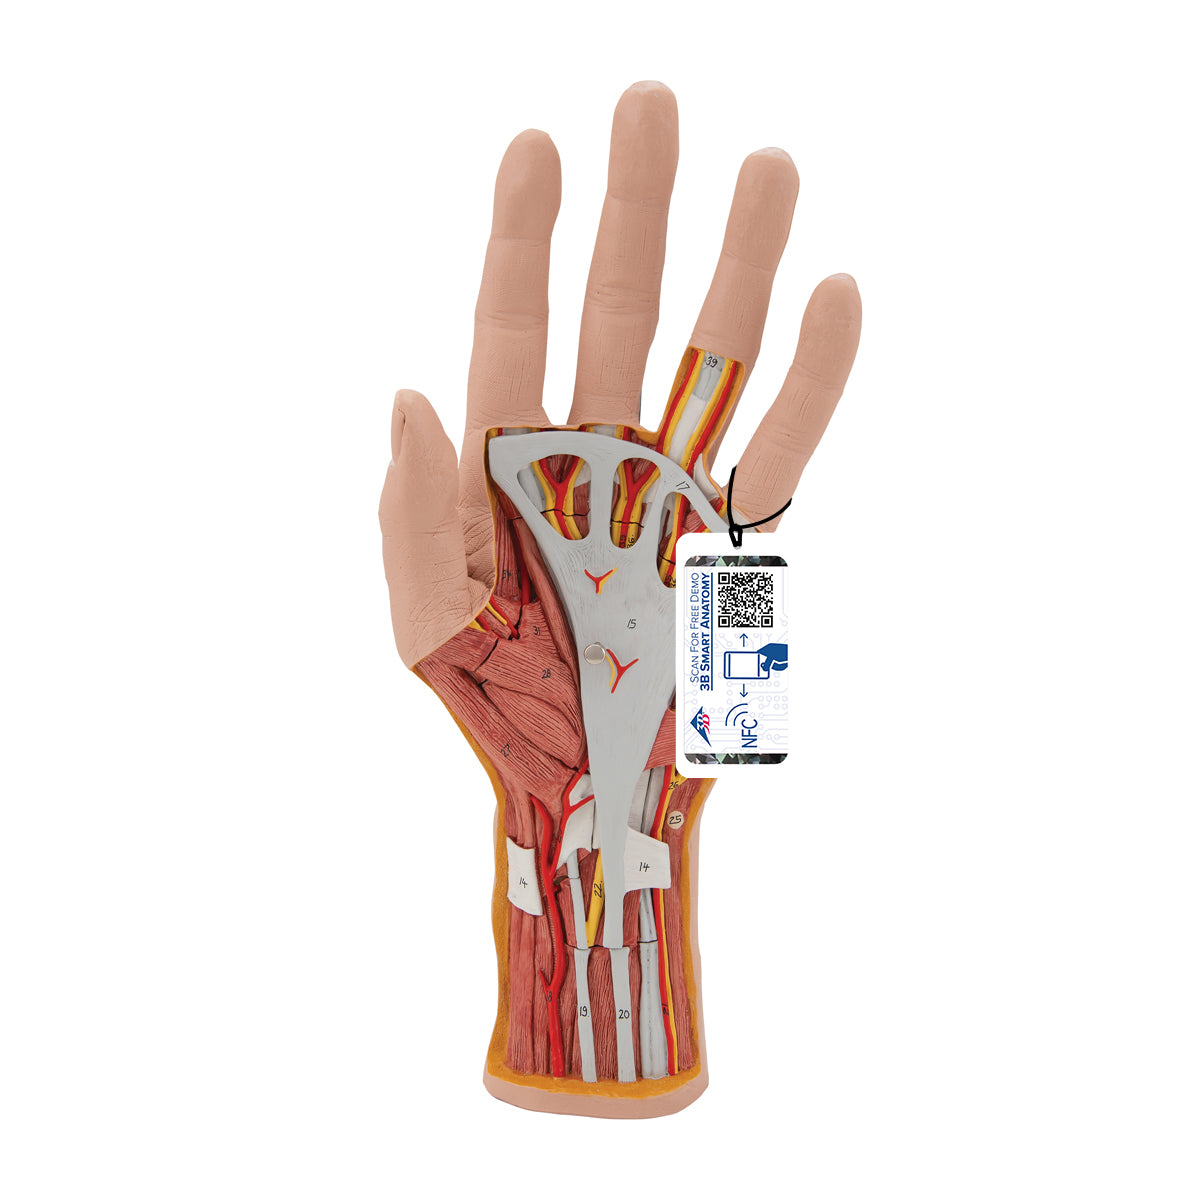 Komplet håndmodel med hud, muskler, sener, kar og nerver - kan adskilles i 3 dele